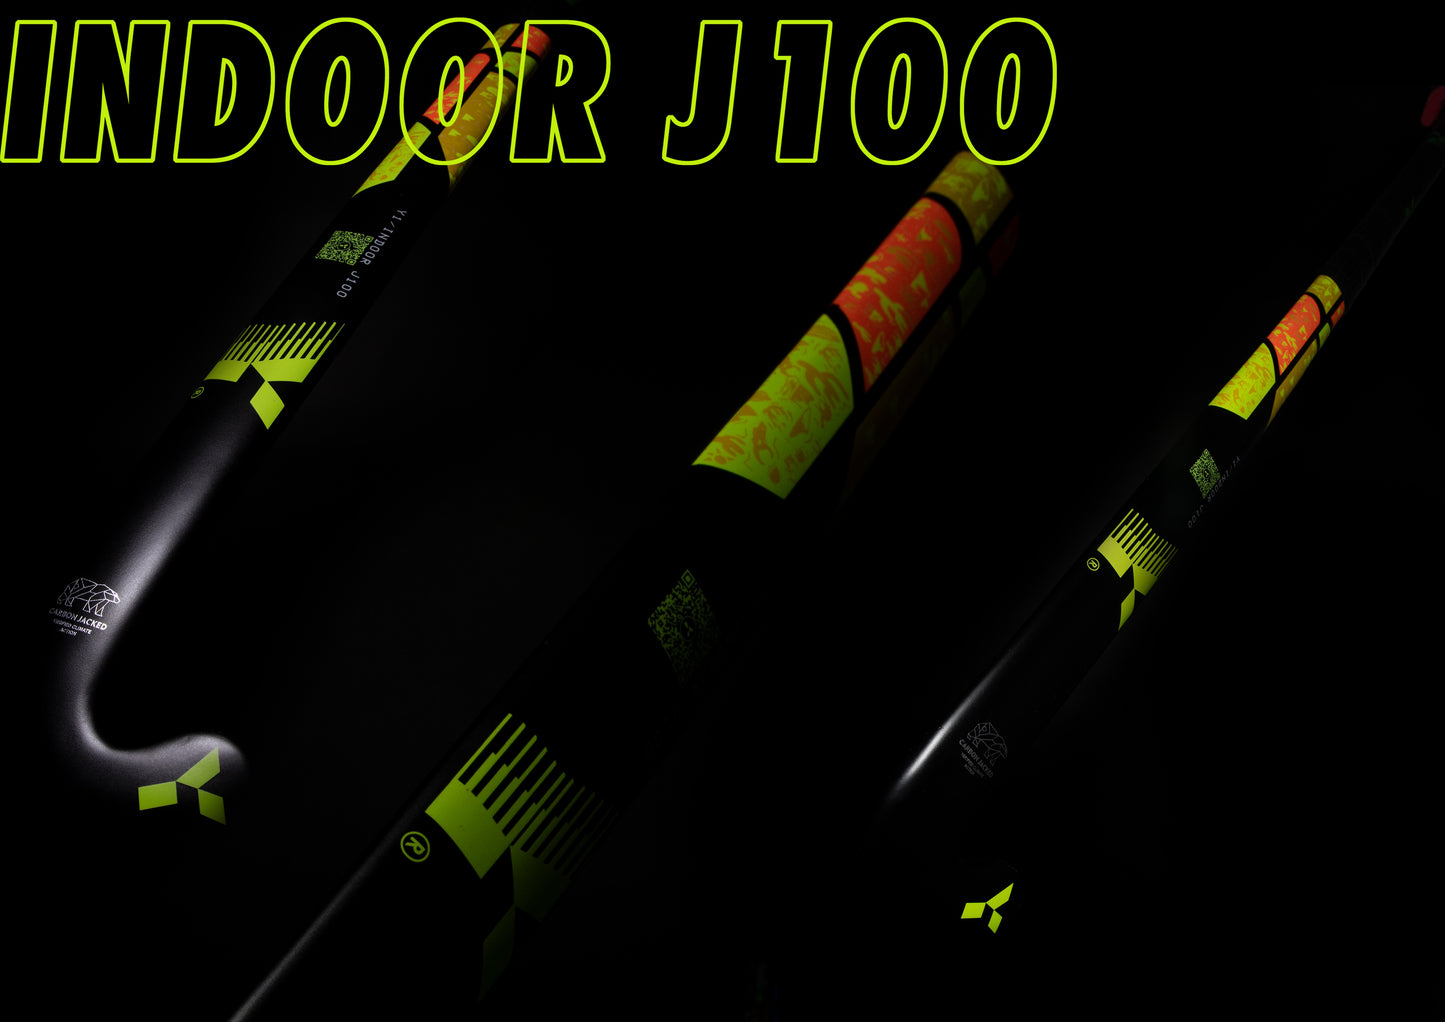 Indoor J100